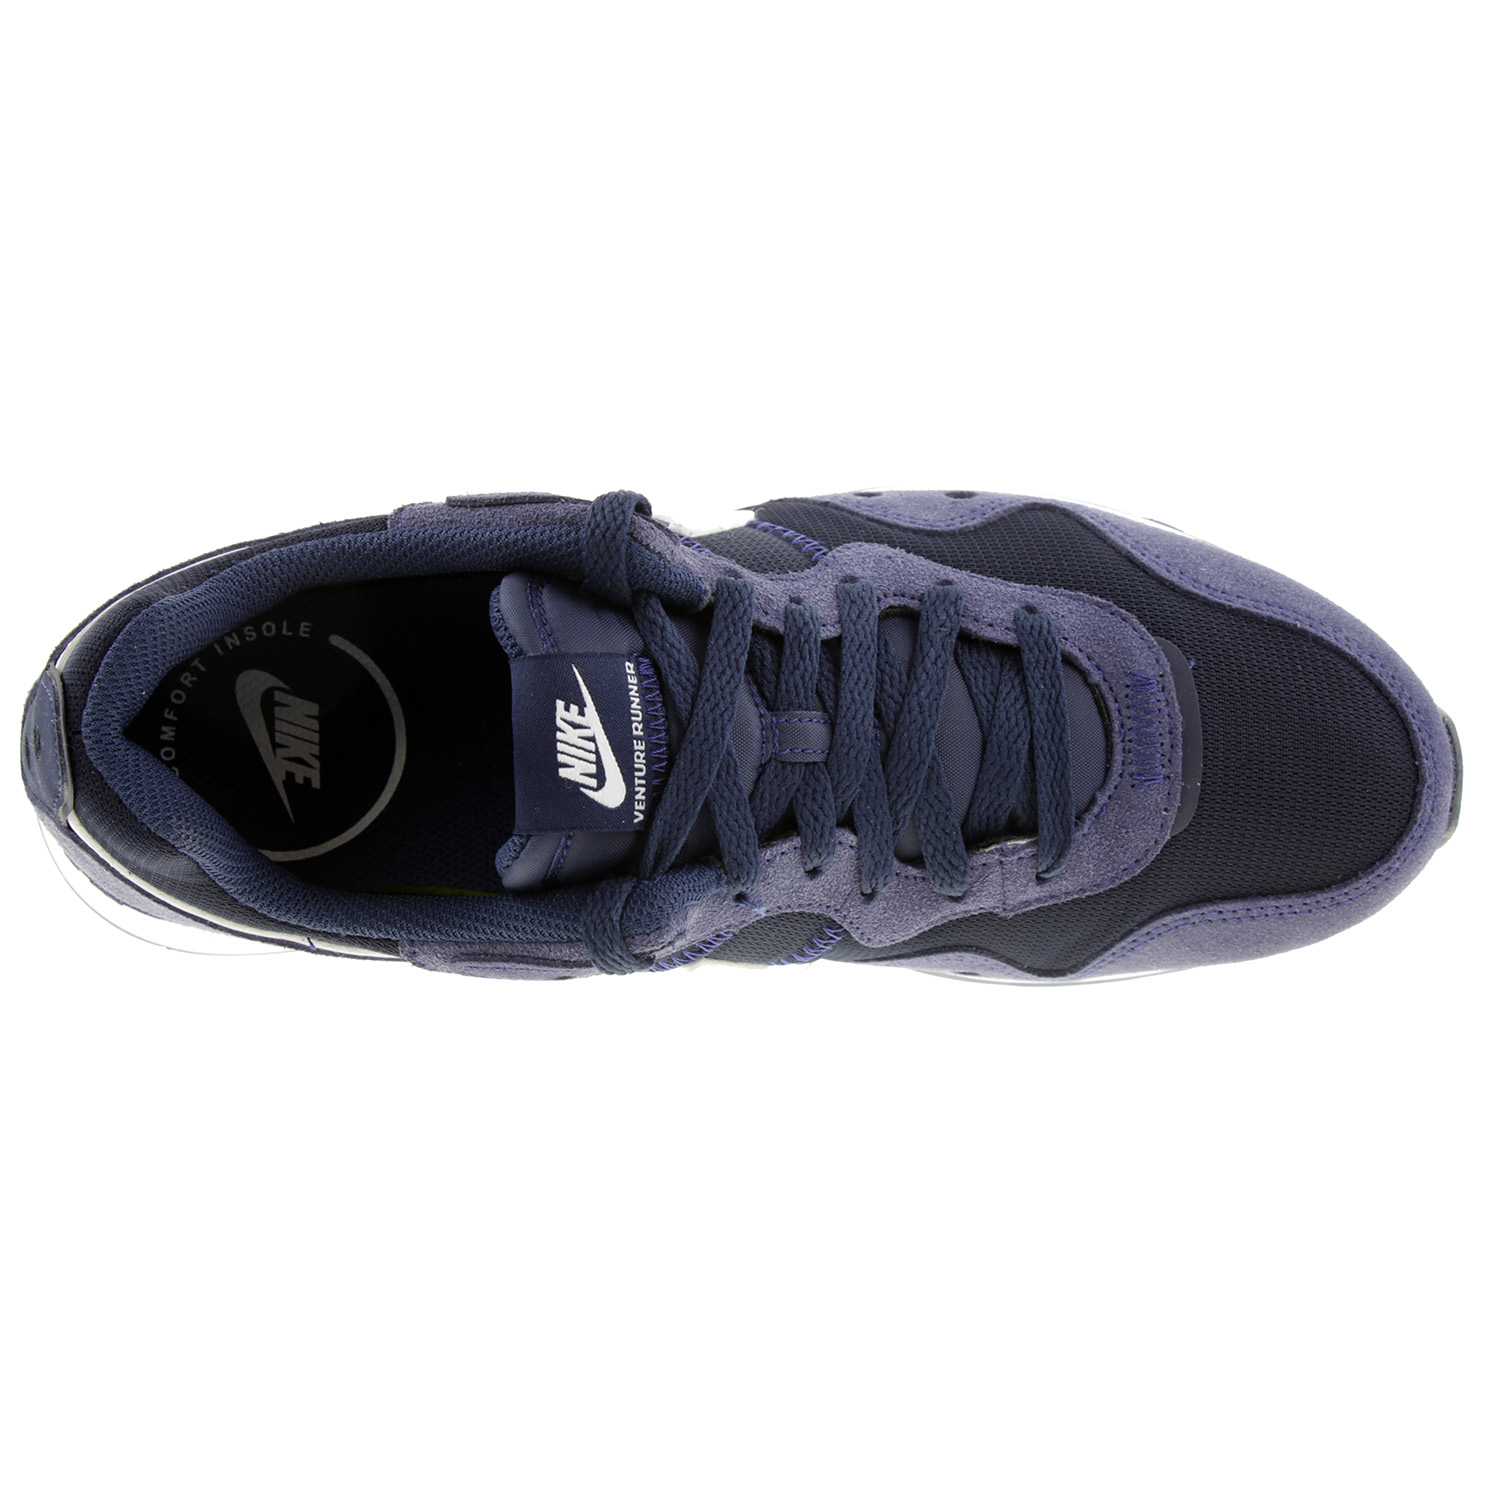 Nike Venture Runner Laufschuhe Herren MEN Sneaker Sportschuhe Run CK2944 400 blau